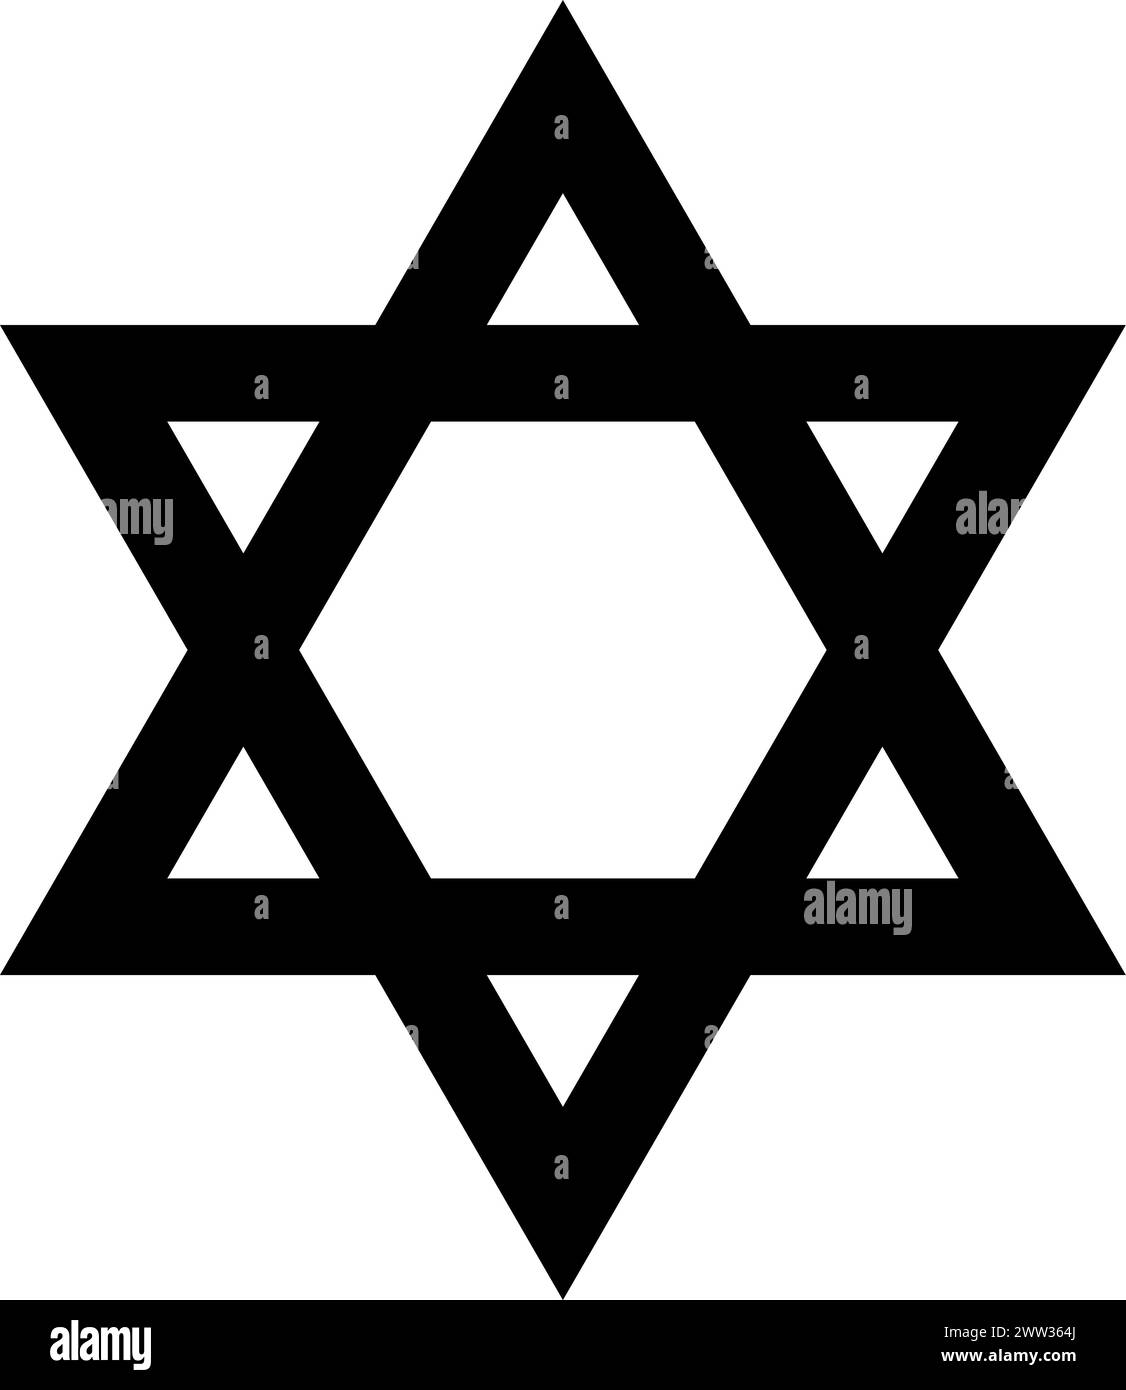 Simbolo religioso mistico della stella esagonale. David spirituale segno della cultura tradizionale di culto e venerazione. Semplice isolamento vettoriale bianco e nero Illustrazione Vettoriale